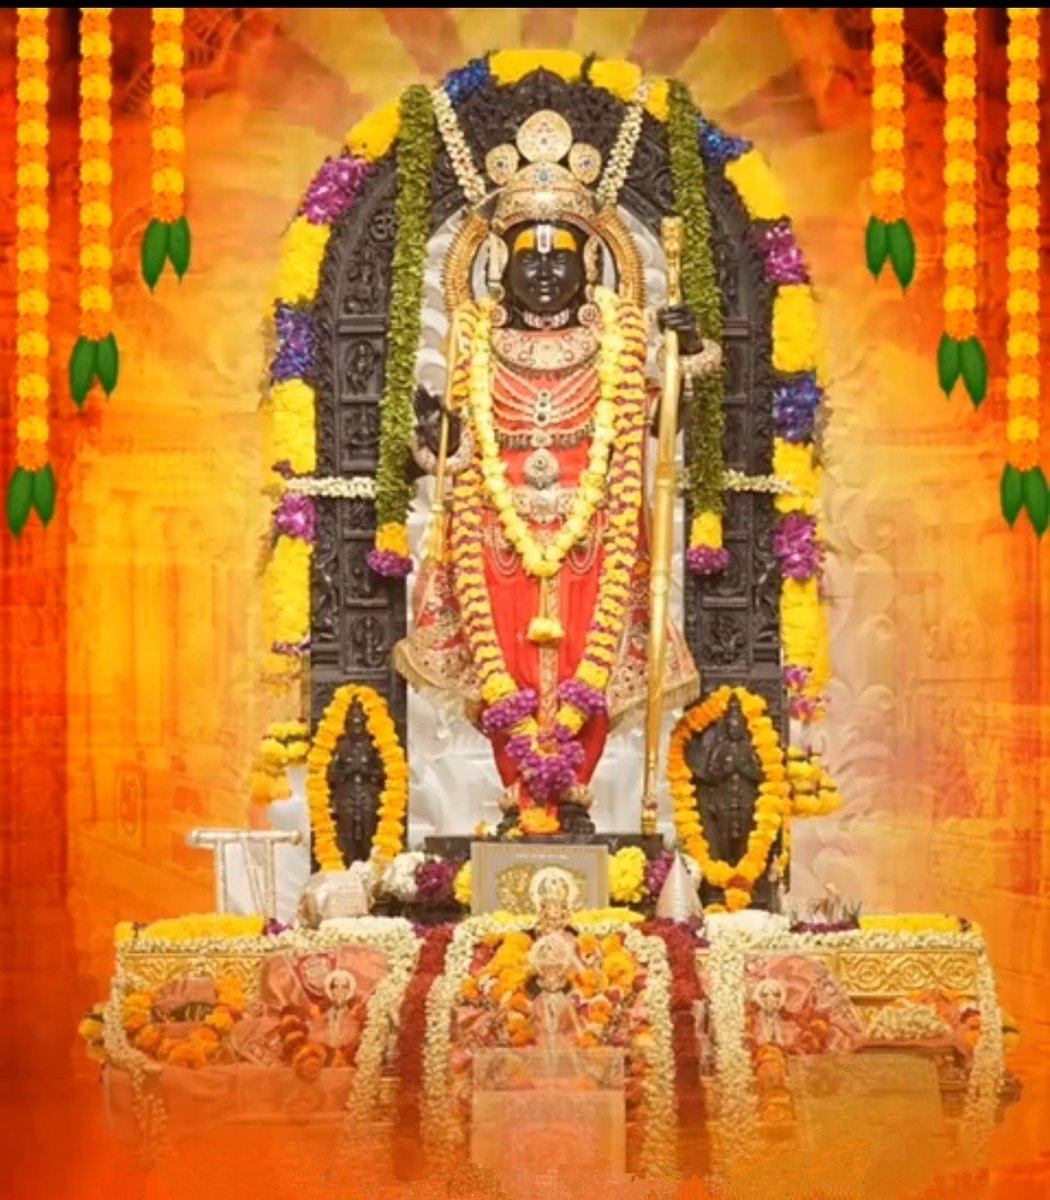 जा पर कृपा राम की होई। ता पर कृपा करहिं सब कोई ॥ जिनके कपट, दम्भ नहिं माया। तिनके हृदय बसहु रघुराया ॥ आप सभी पर मर्यादा पुरुषोत्तम भगवान श्री राम जी की कृपा बनी रहें। #Ramnavami #श्रीराम #NarendraModi